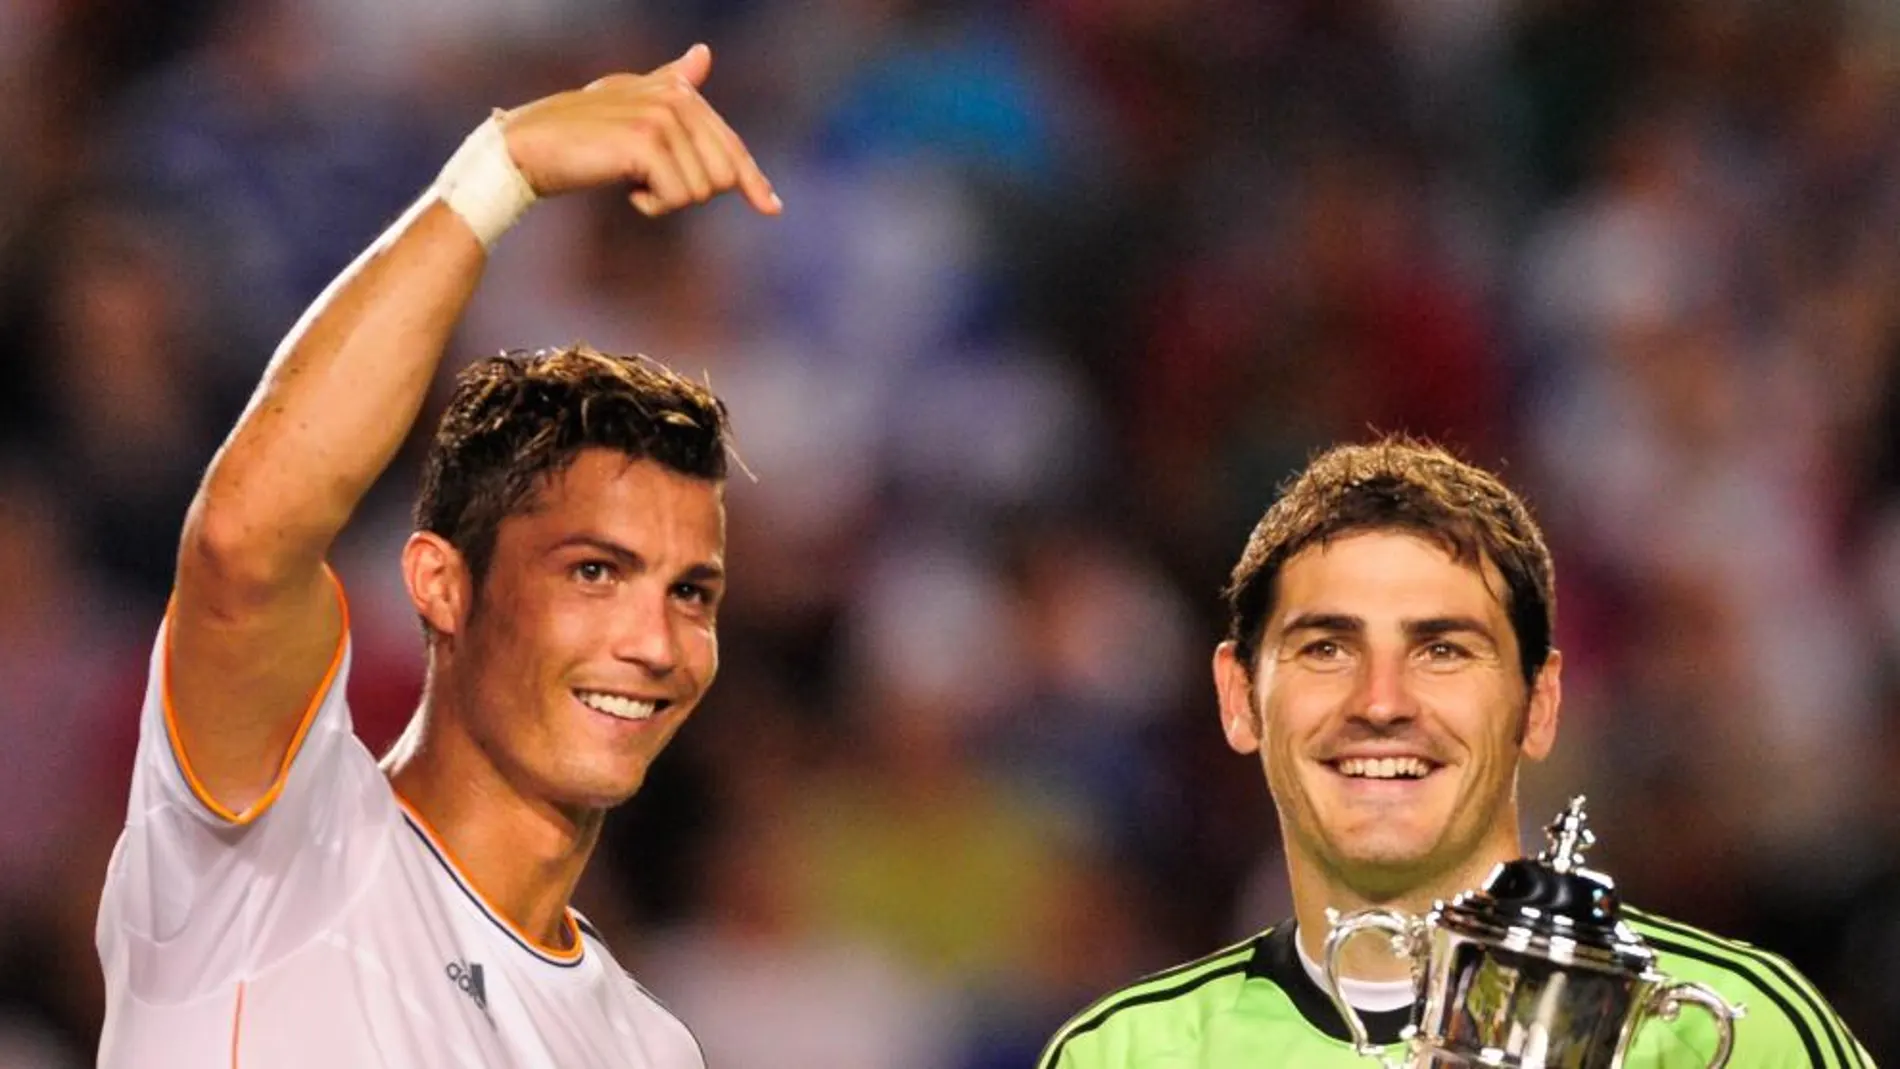 Cristiano y Casillas venían de una productiva temporada, pero se marcharon prematuramente en el Mundial